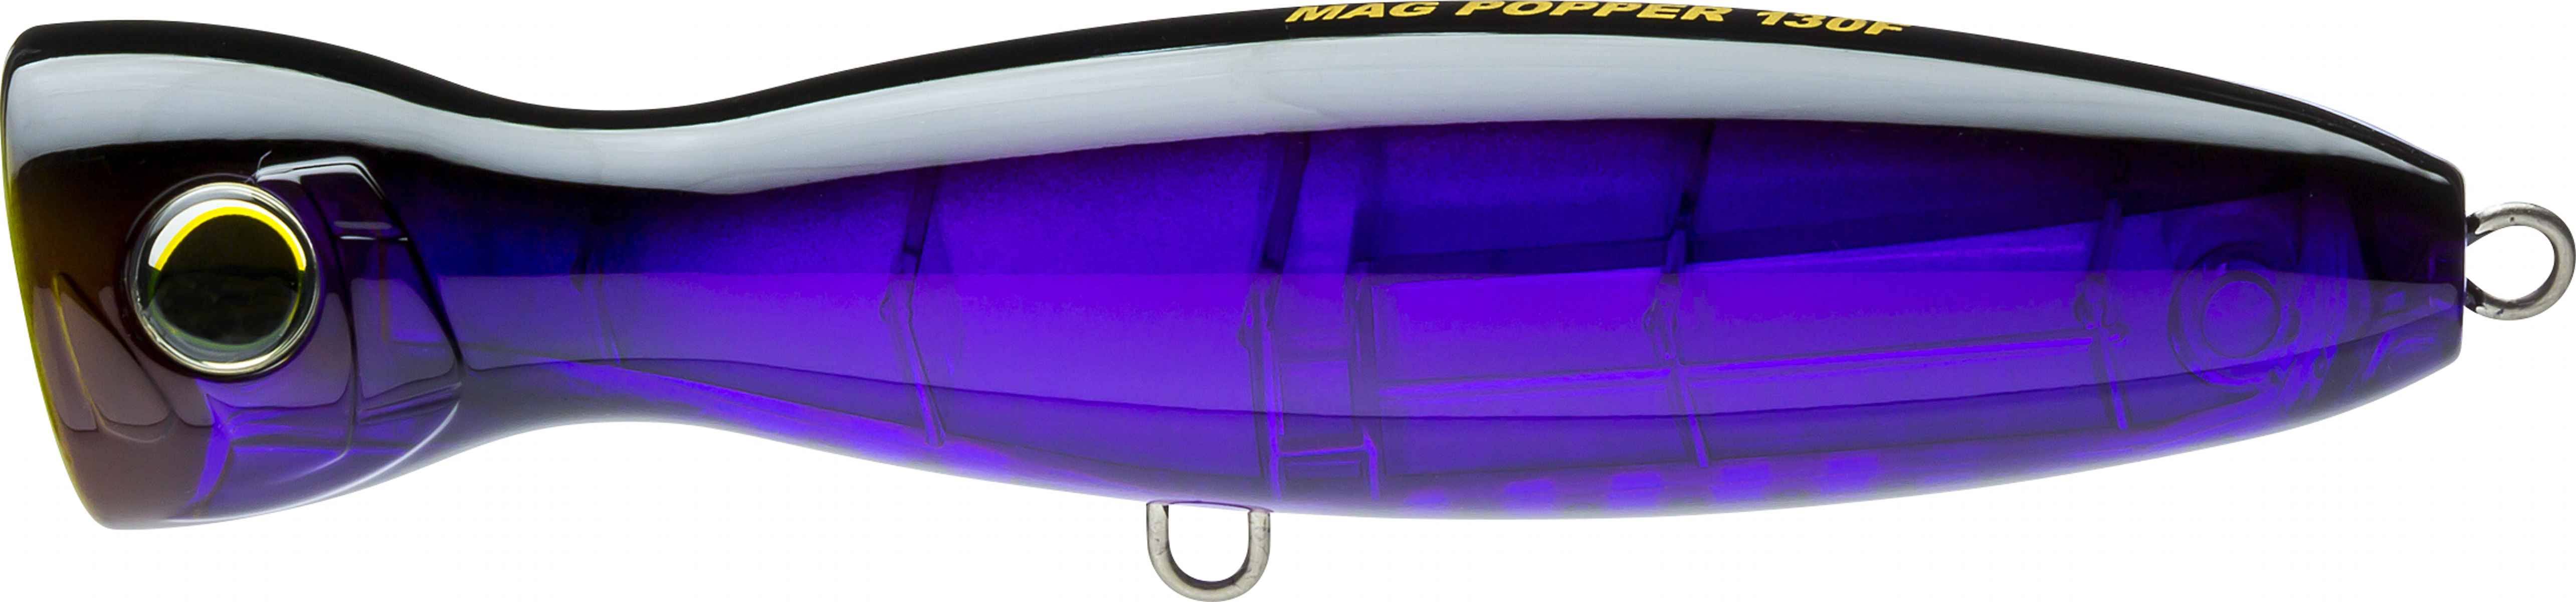 Yo Zuri Mag Popper 160F Floating Lure R1371-BP (5008)